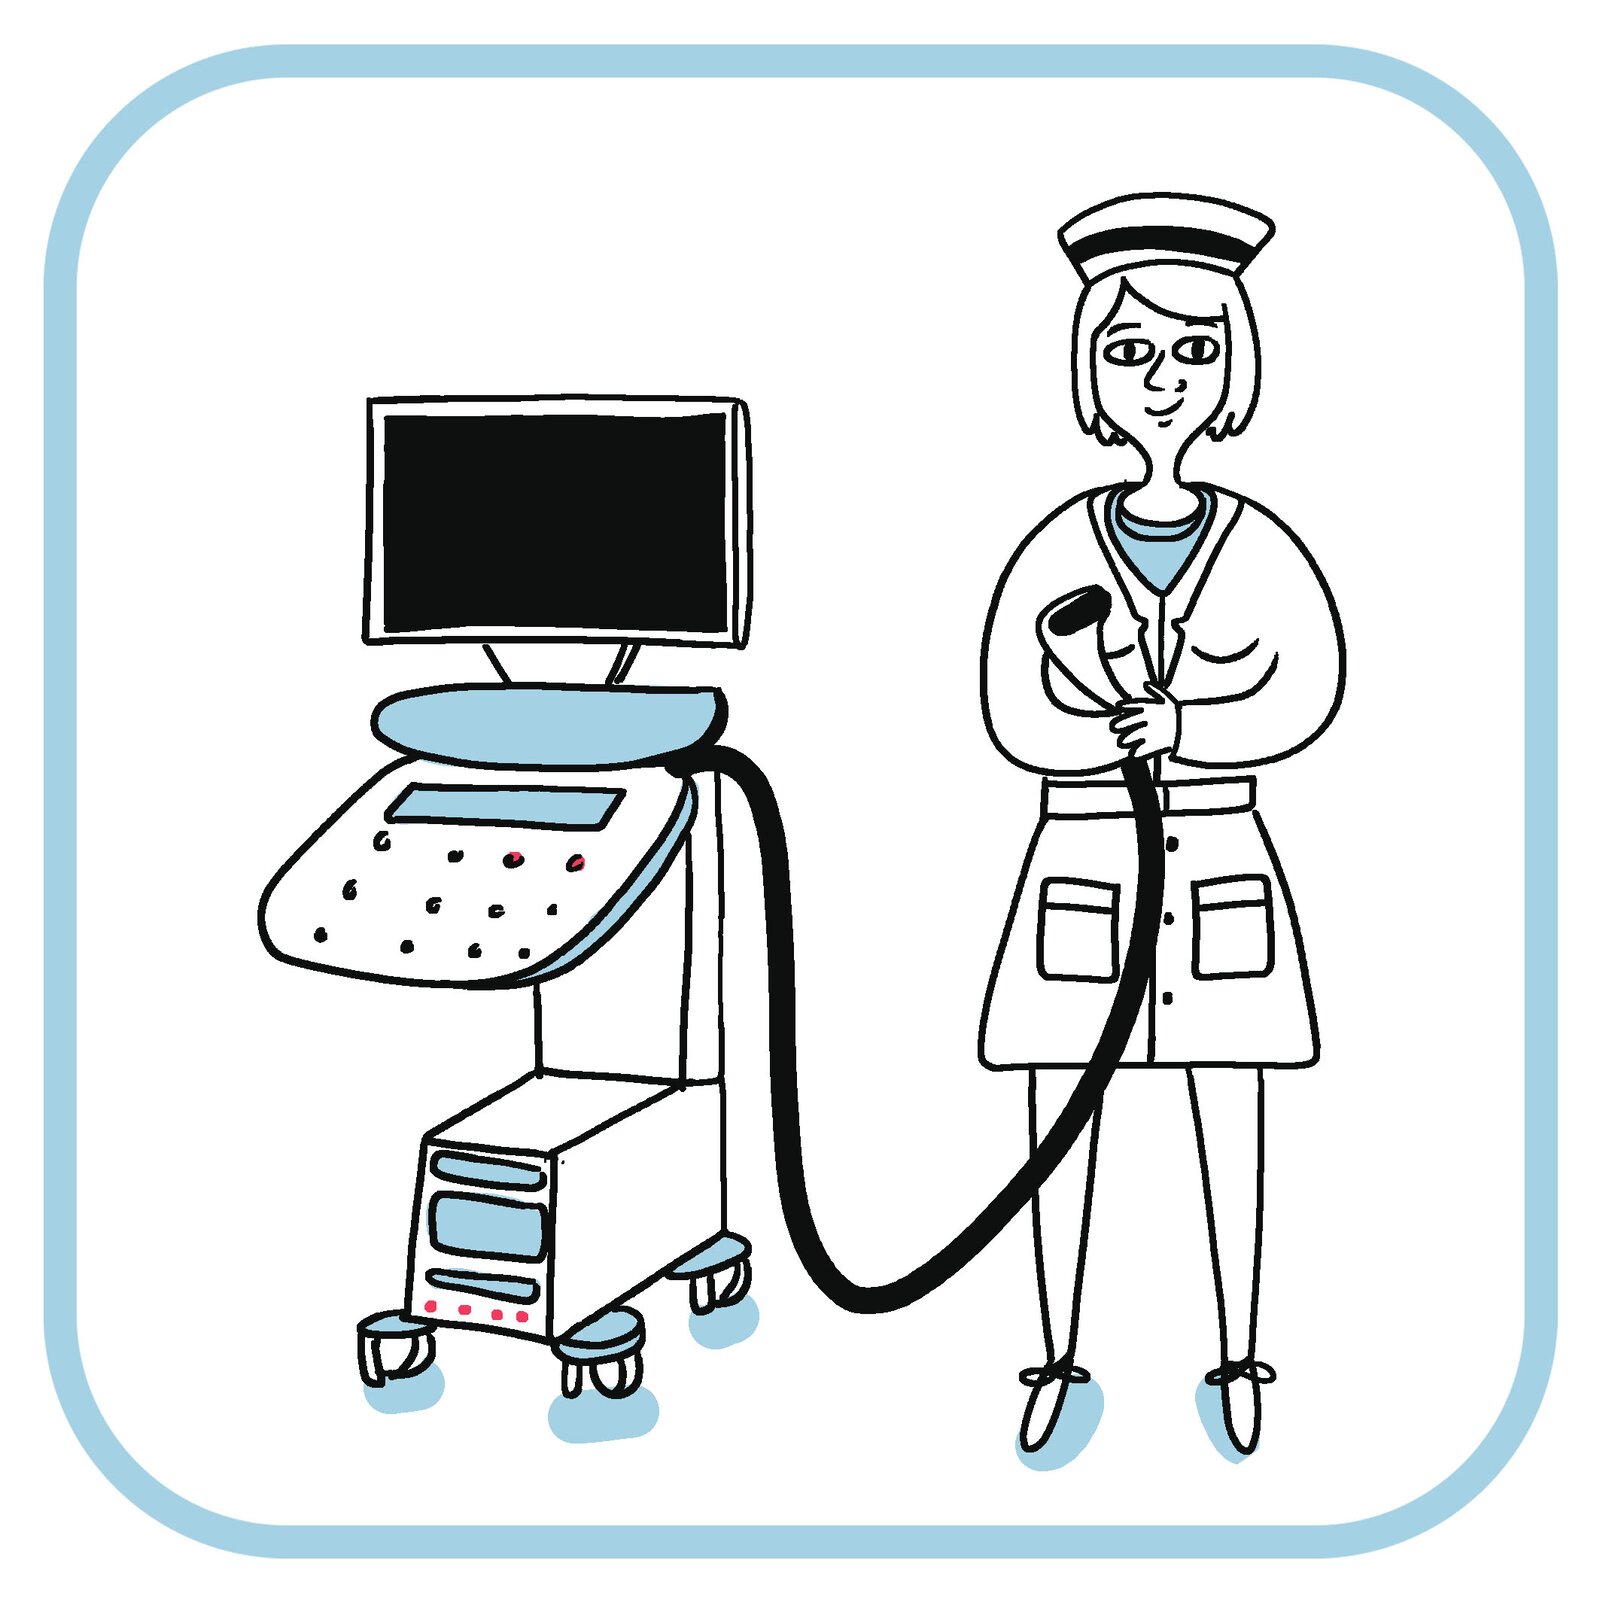 Pielęgniarka trzyma w rękach głowicę USG. Obok niej jest monitor i pozostałe elementy sprzętu.